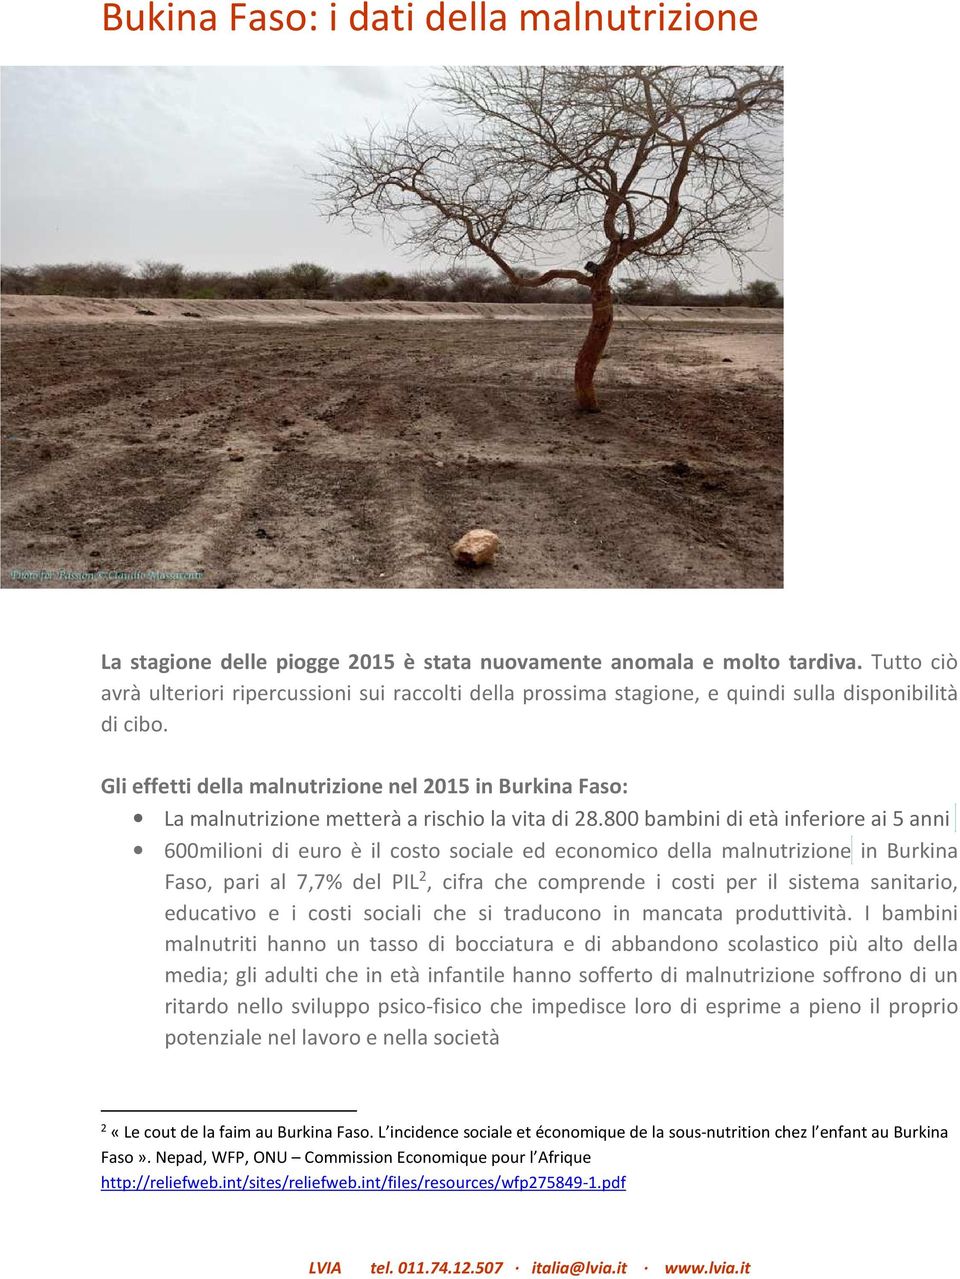 Gli effetti della malnutrizione nel 2015 in Burkina Faso: La malnutrizione metterà a rischio la vita di 28.